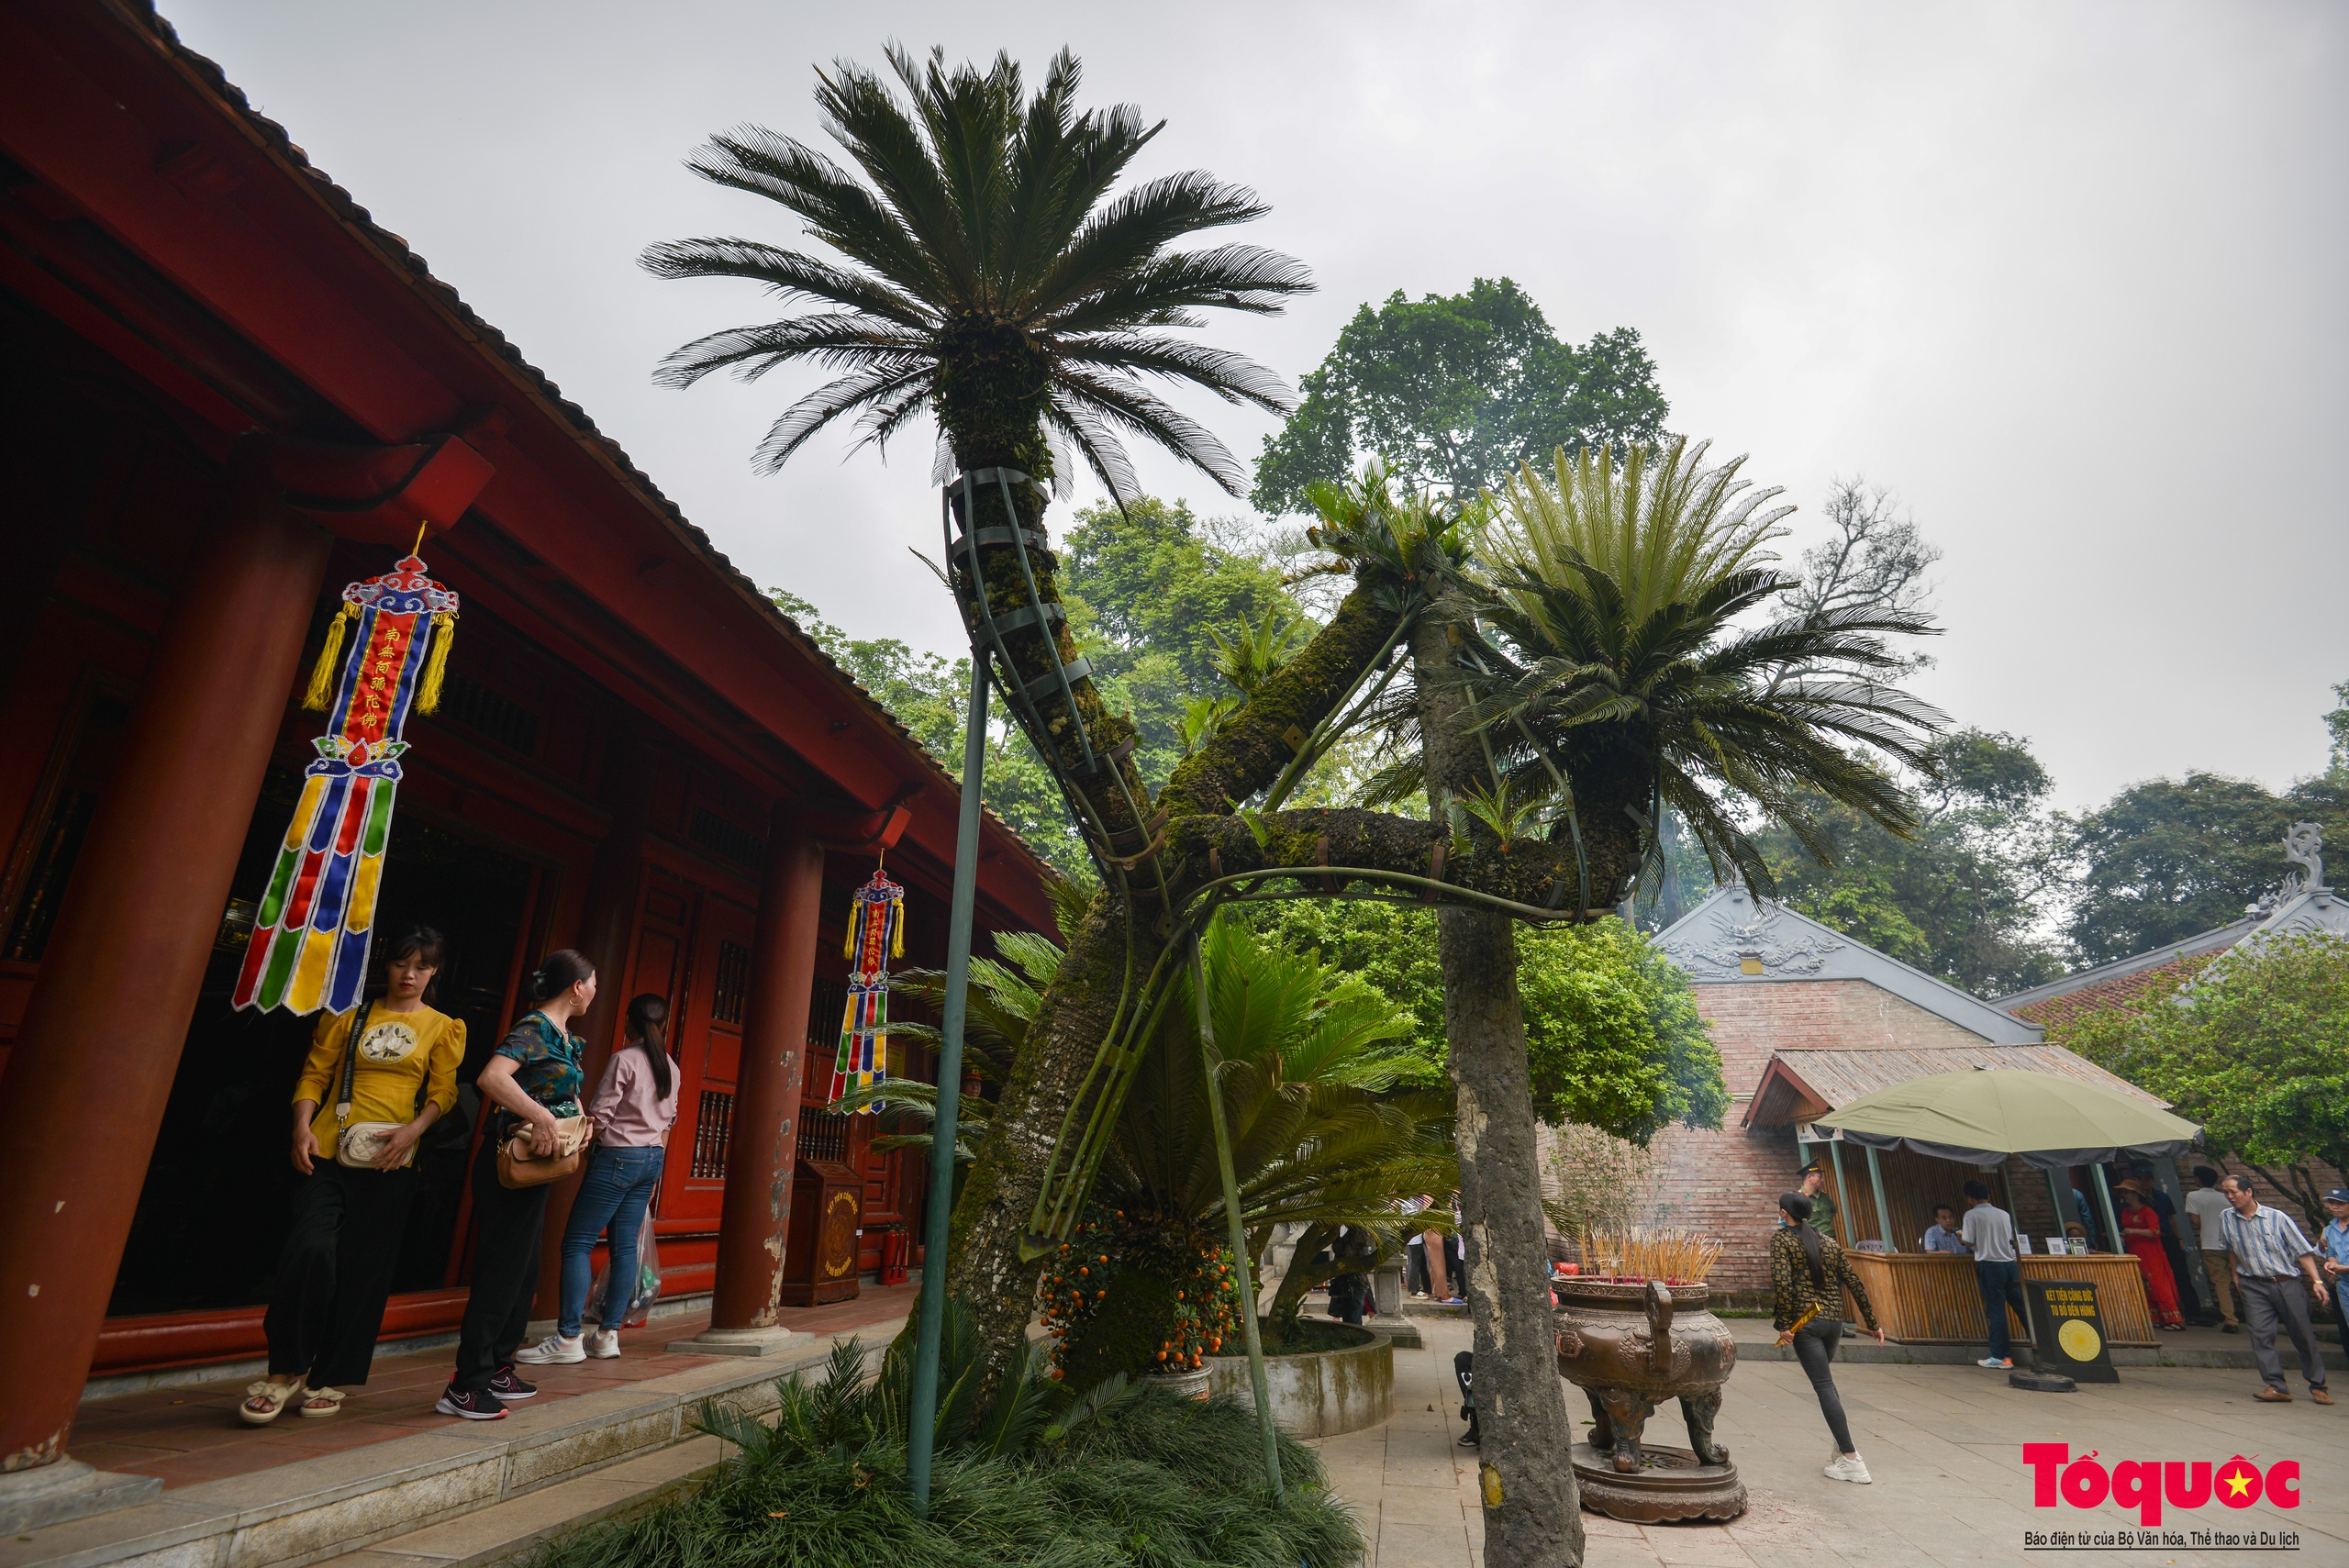 Chiêm ngưỡng cây vạn tuế gần ngàn năm tuổi - Báu vật xanh của Di tích lịch sử Đền Hùng - Ảnh 3.